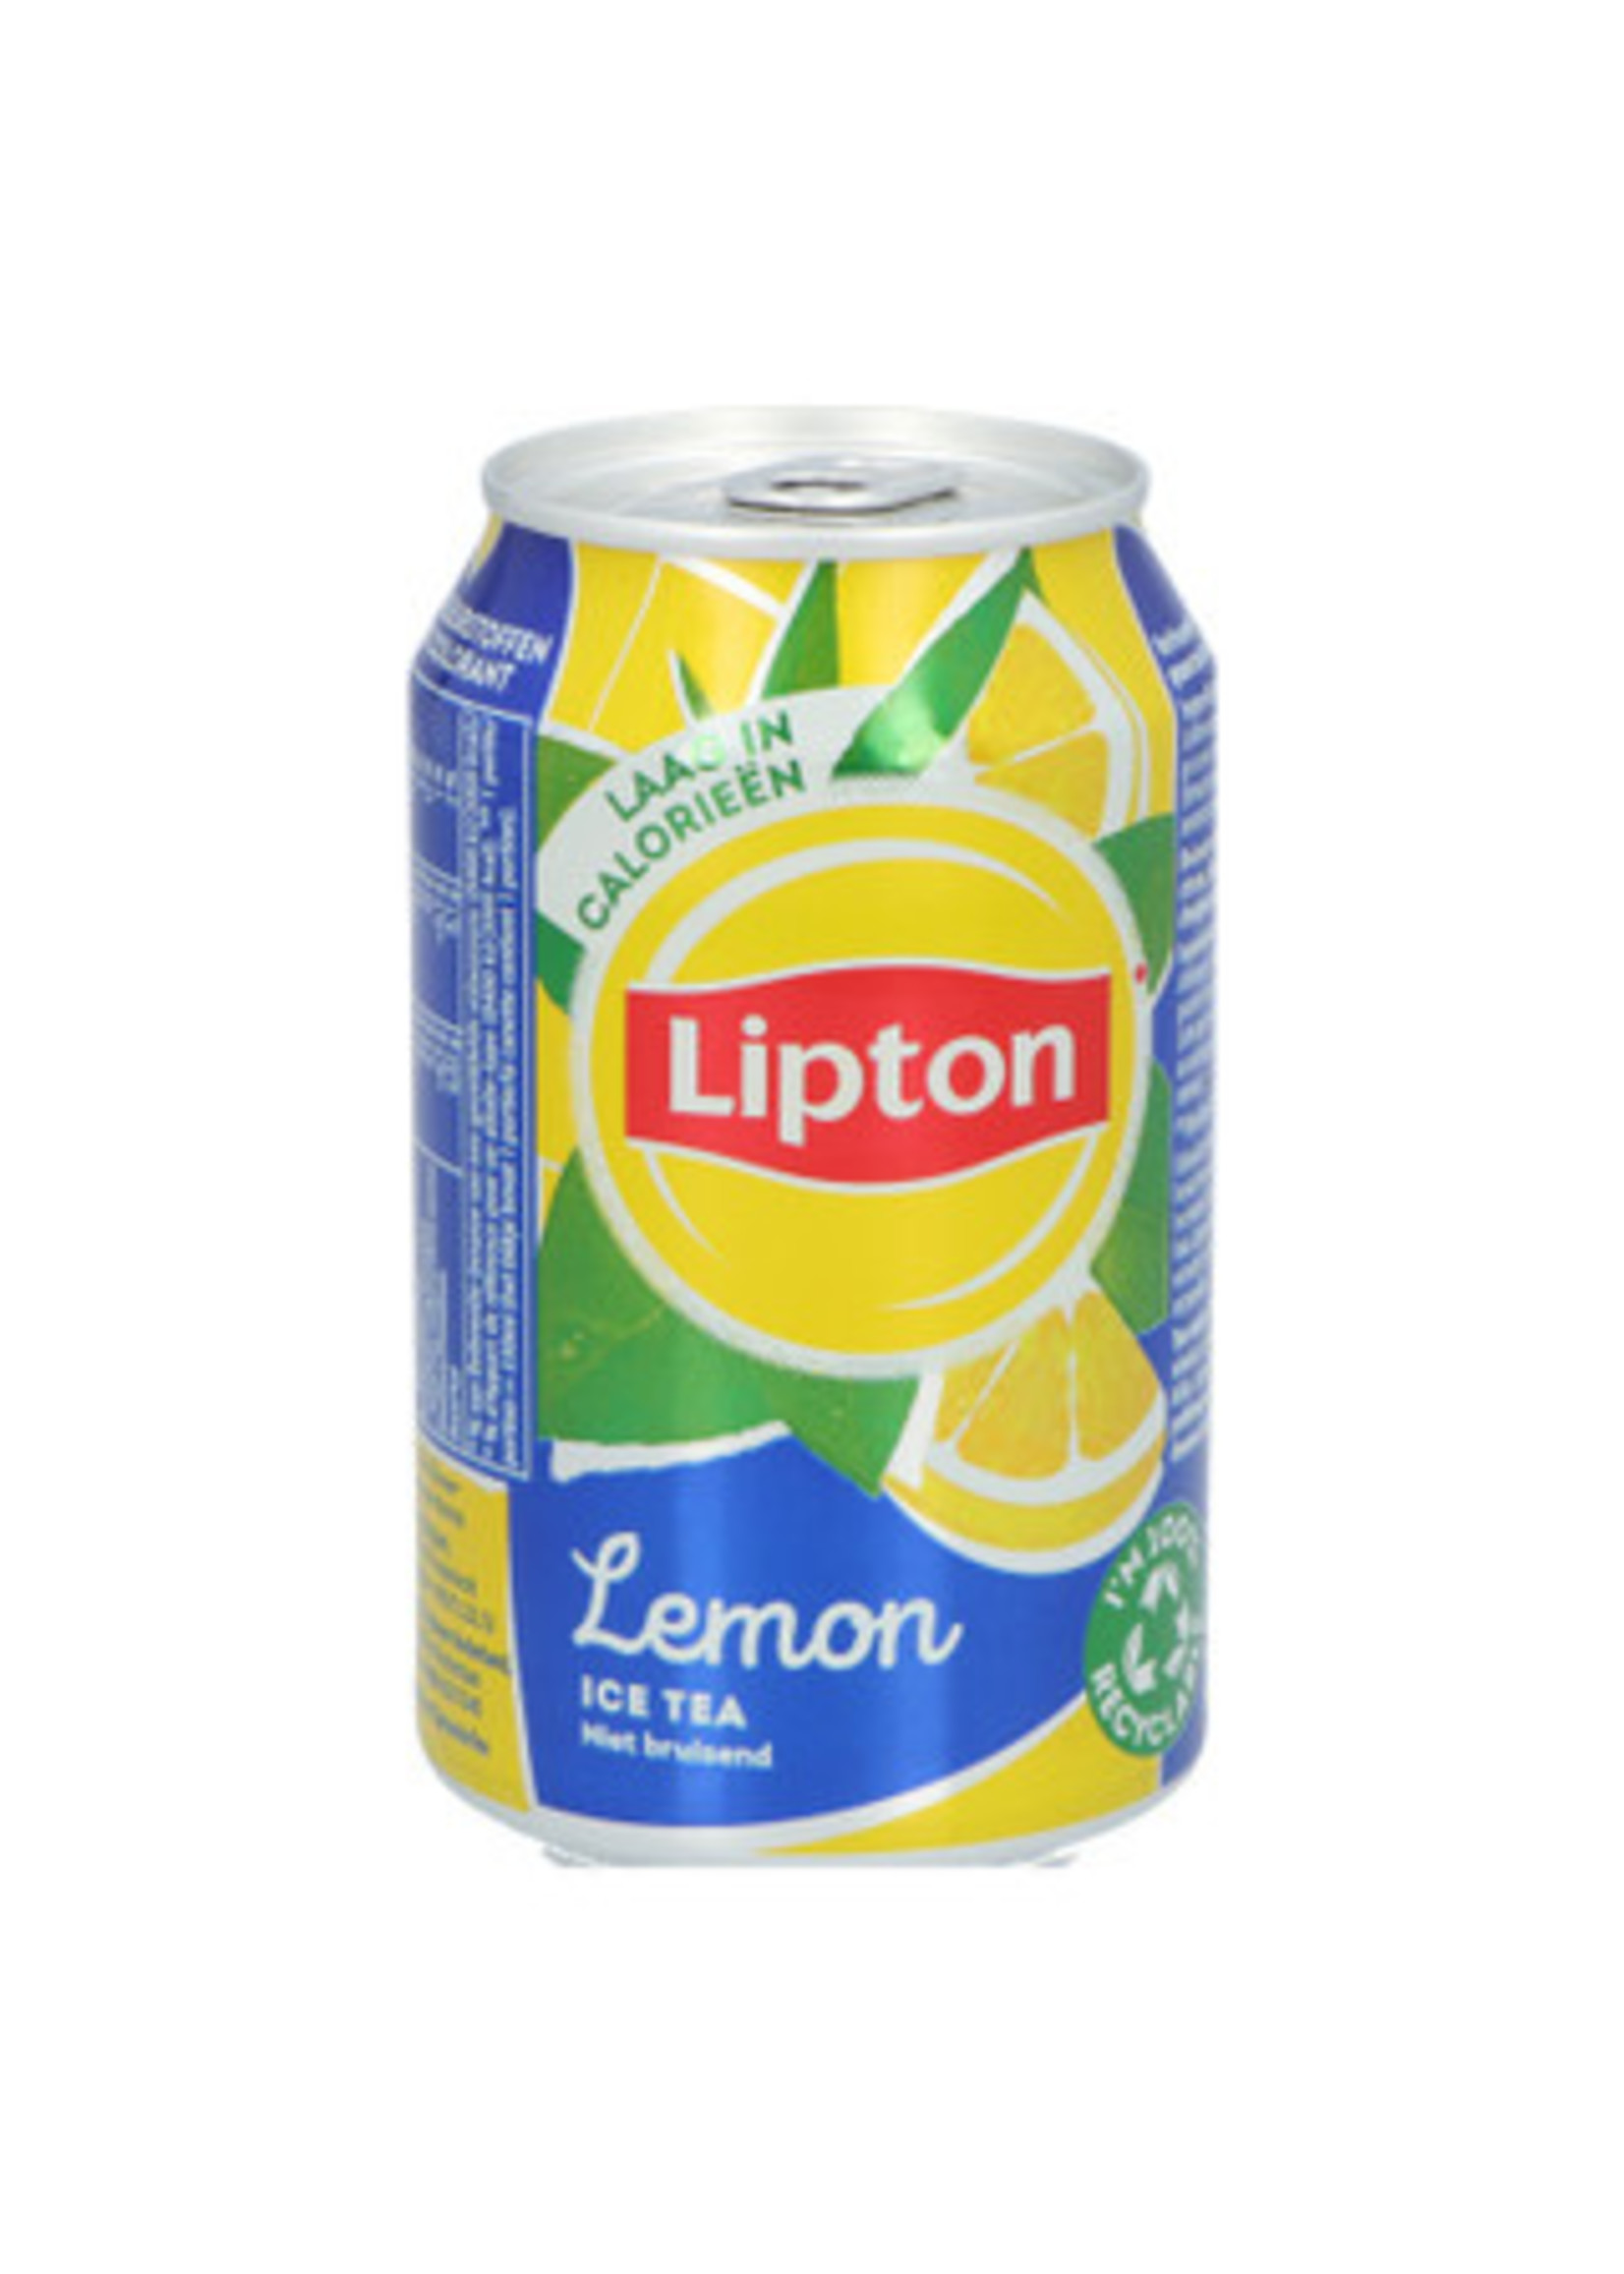 brandmasters Ice tea lemon no bubbles tray 24 blikjes 330ml (statiegeld blikje)